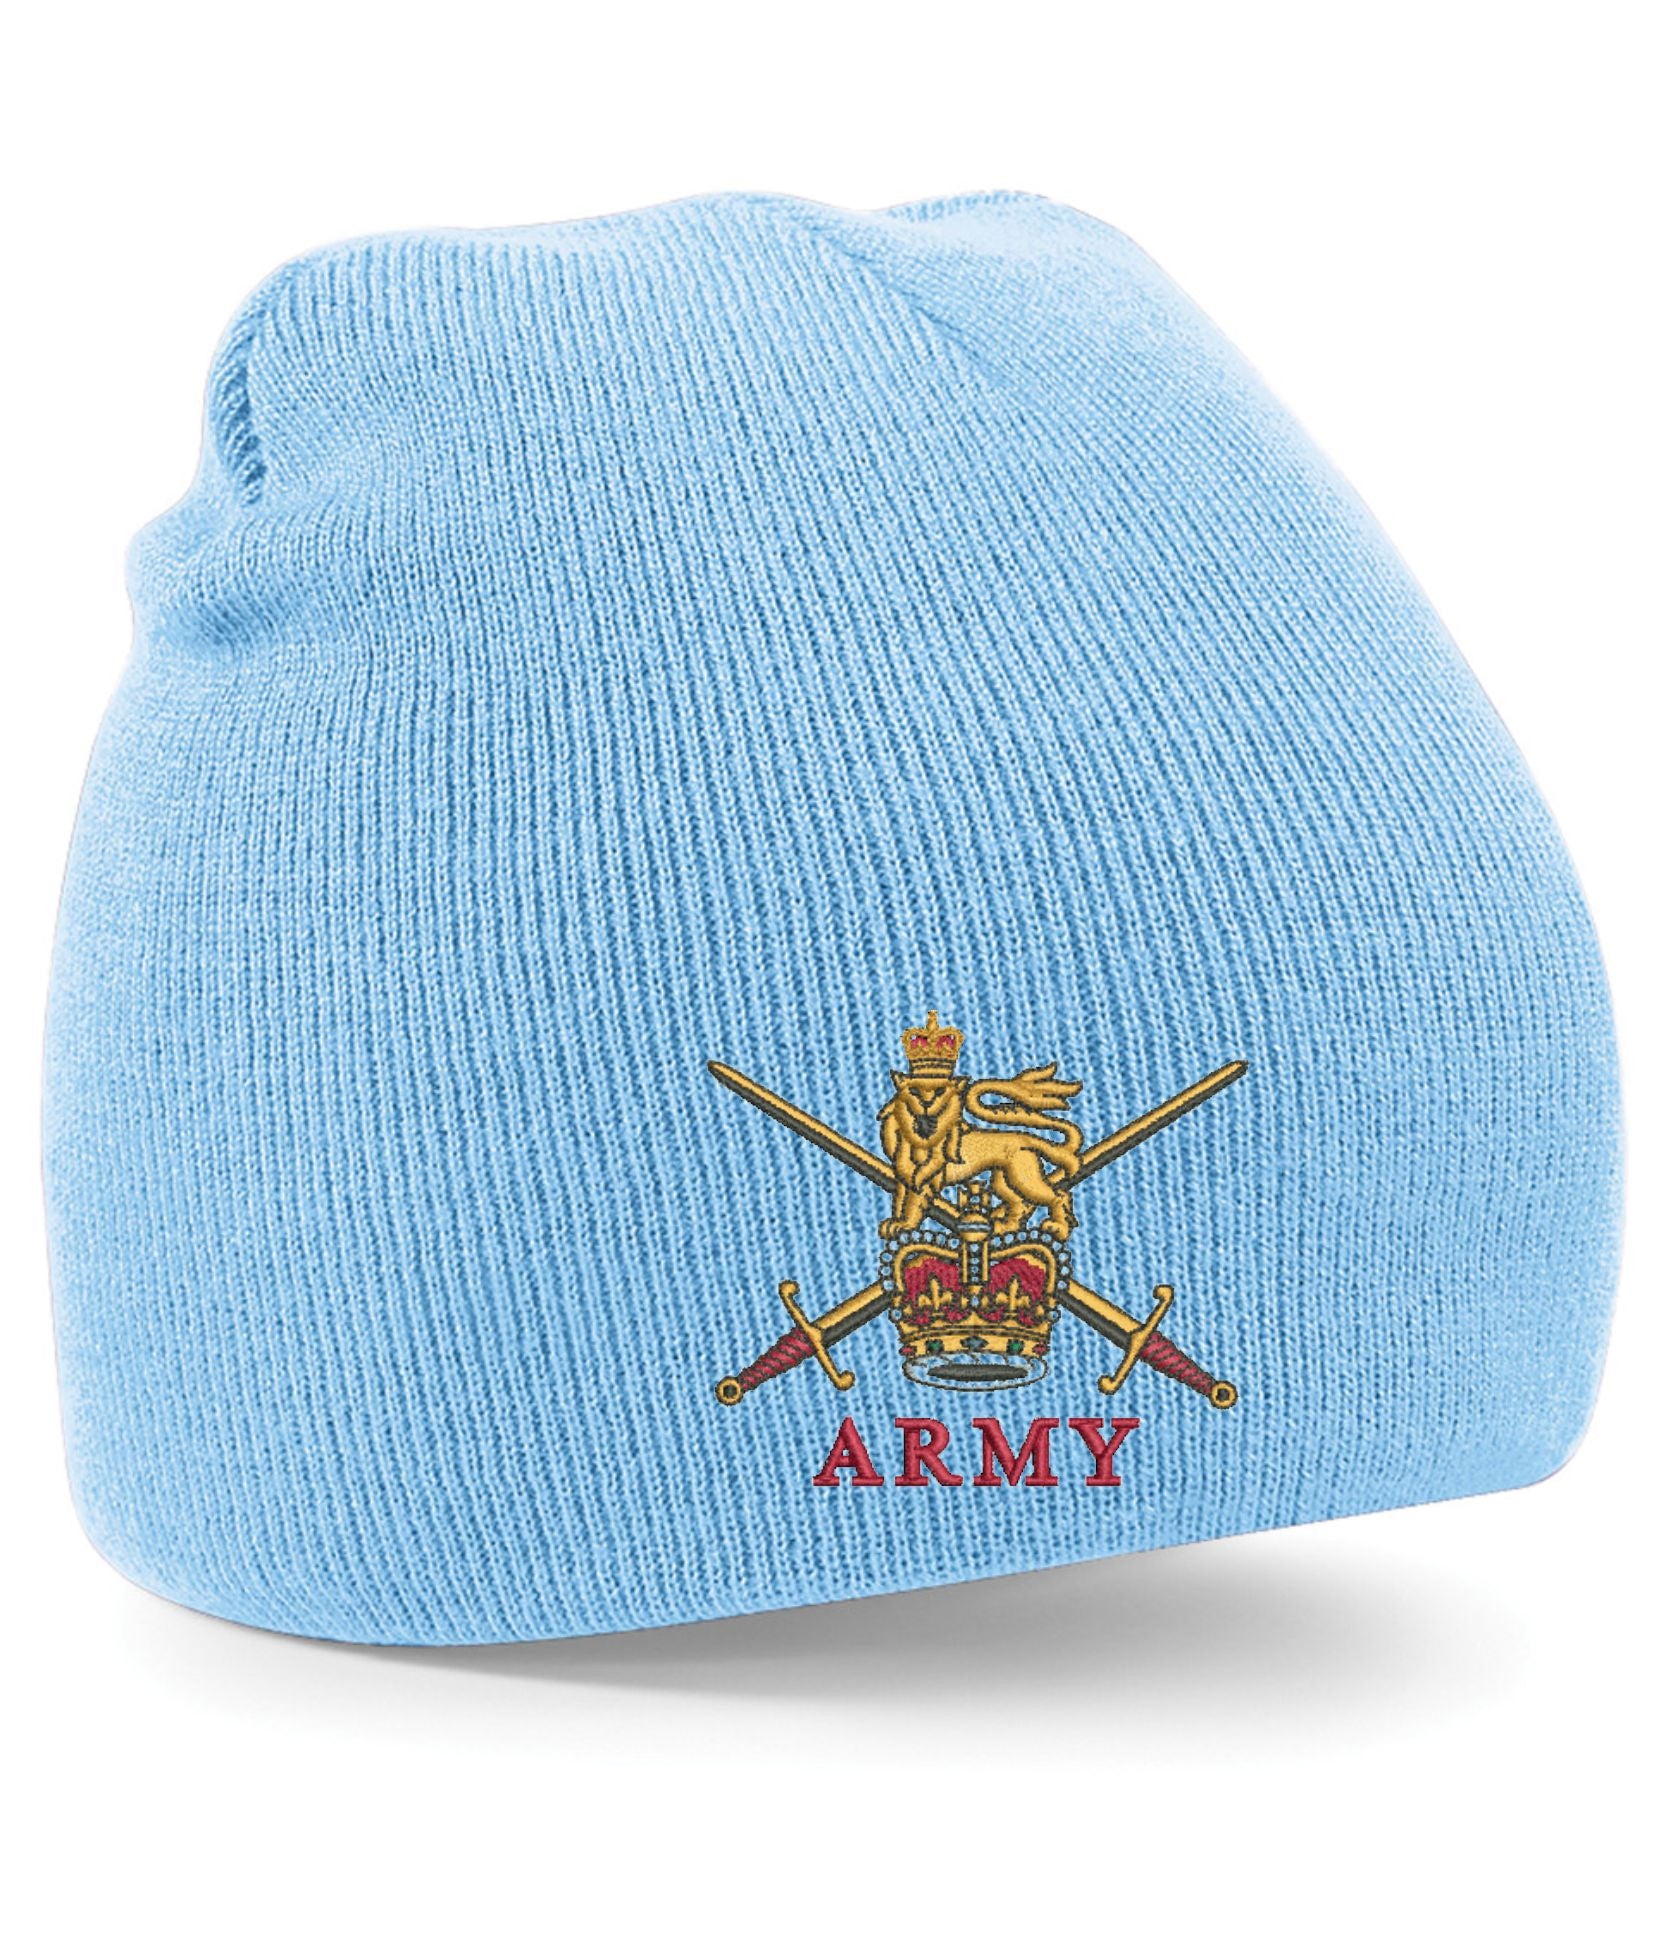 Army Beanie Hats